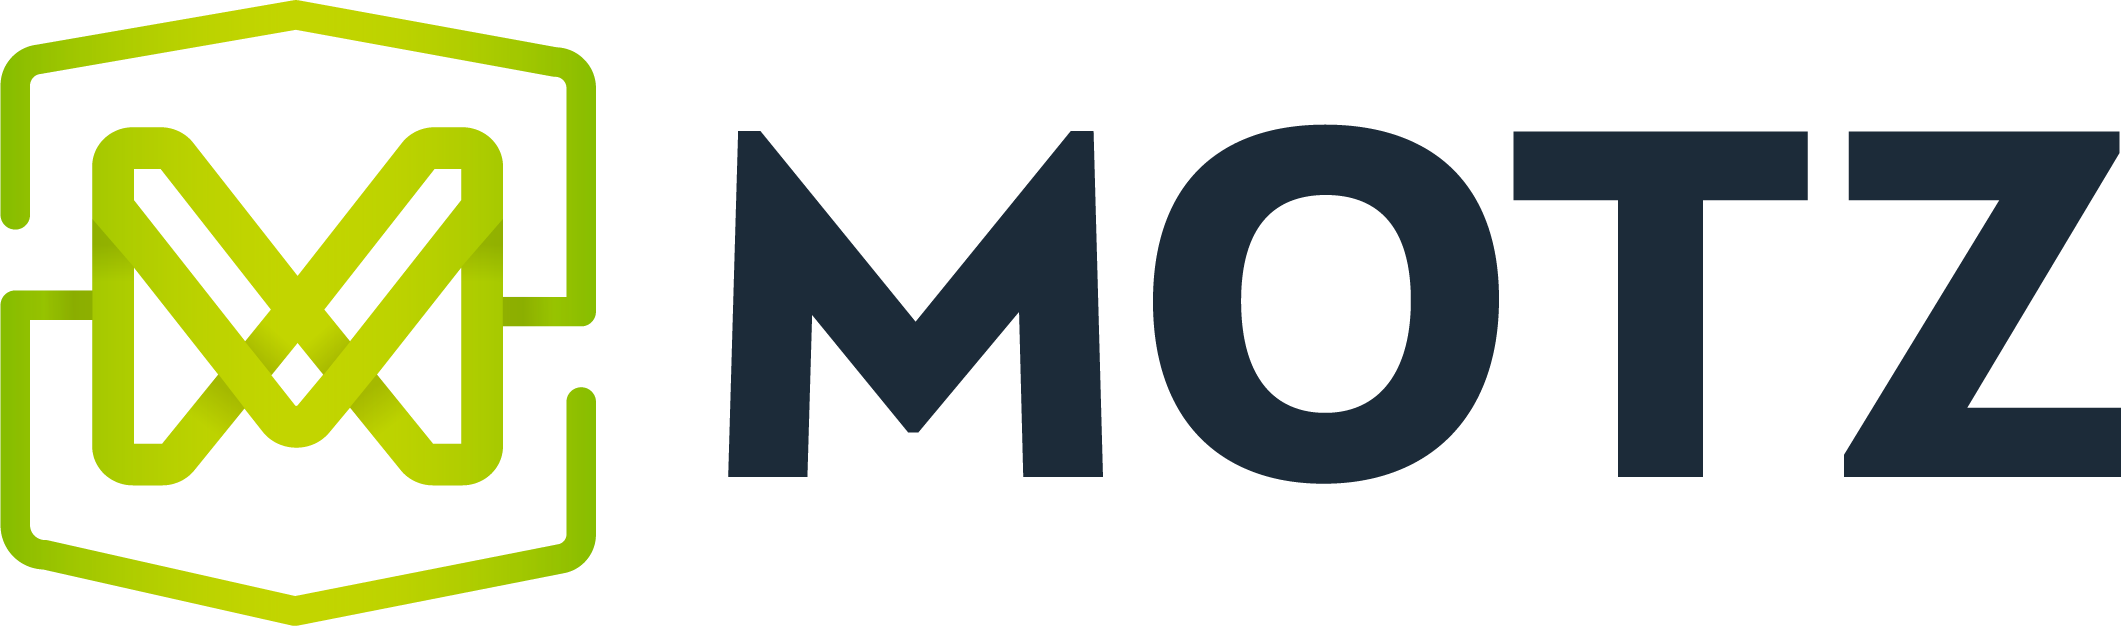 The Motz Group Company Logo